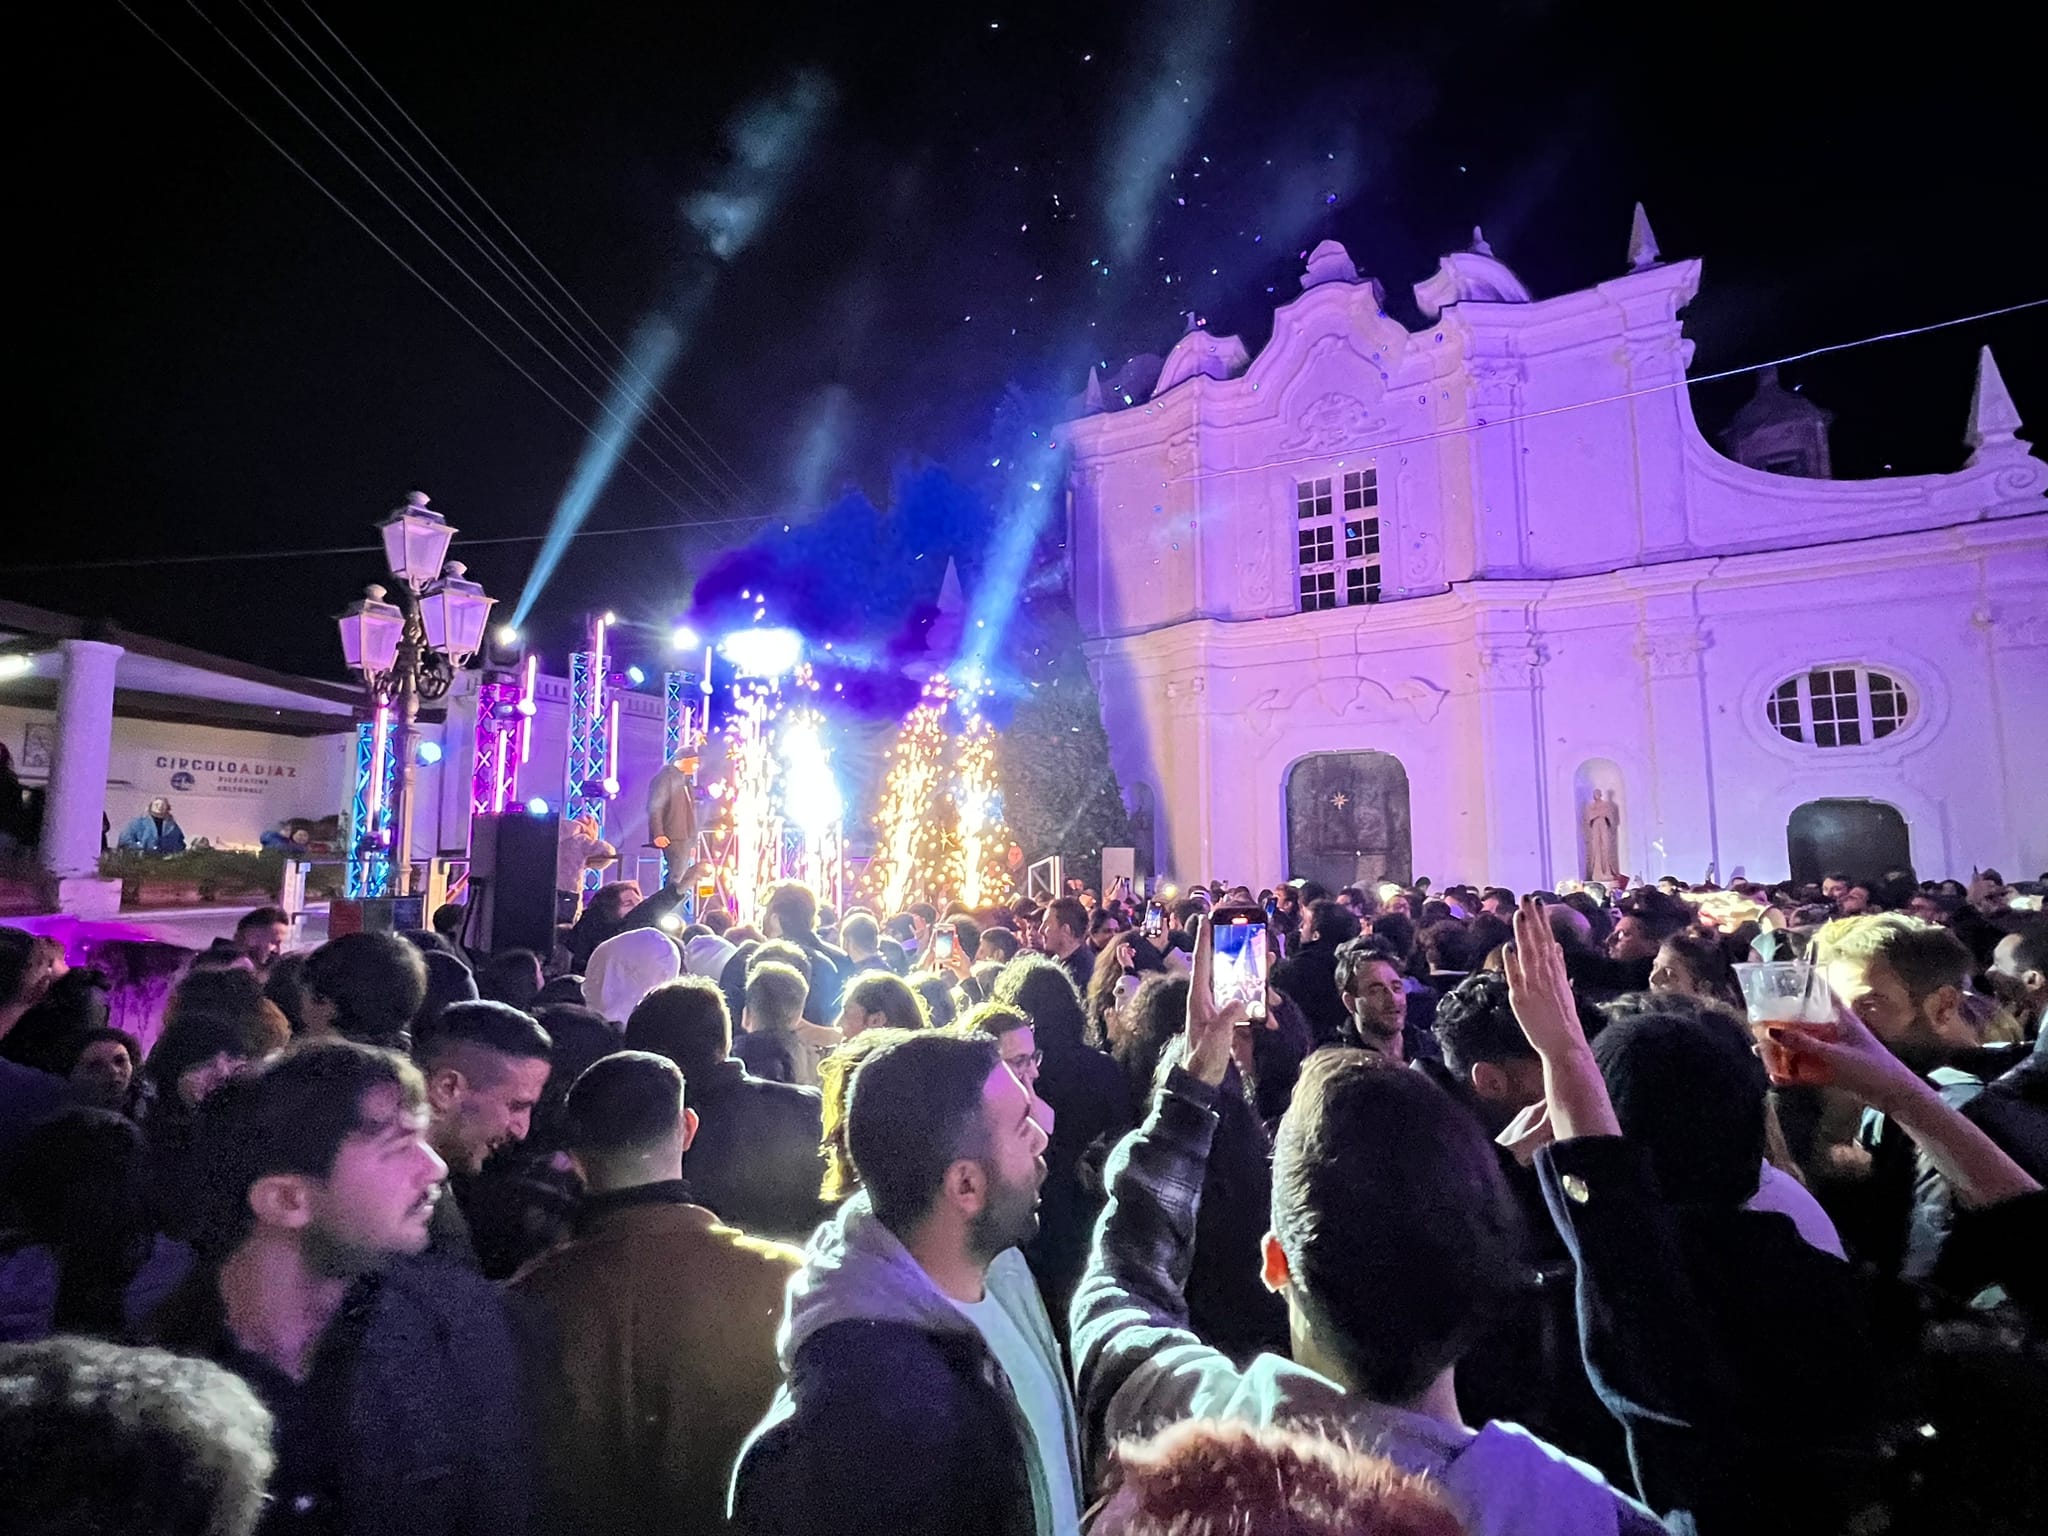 Torna “Anacapri music festival”, una lunga serata con musica, dj ed eventi